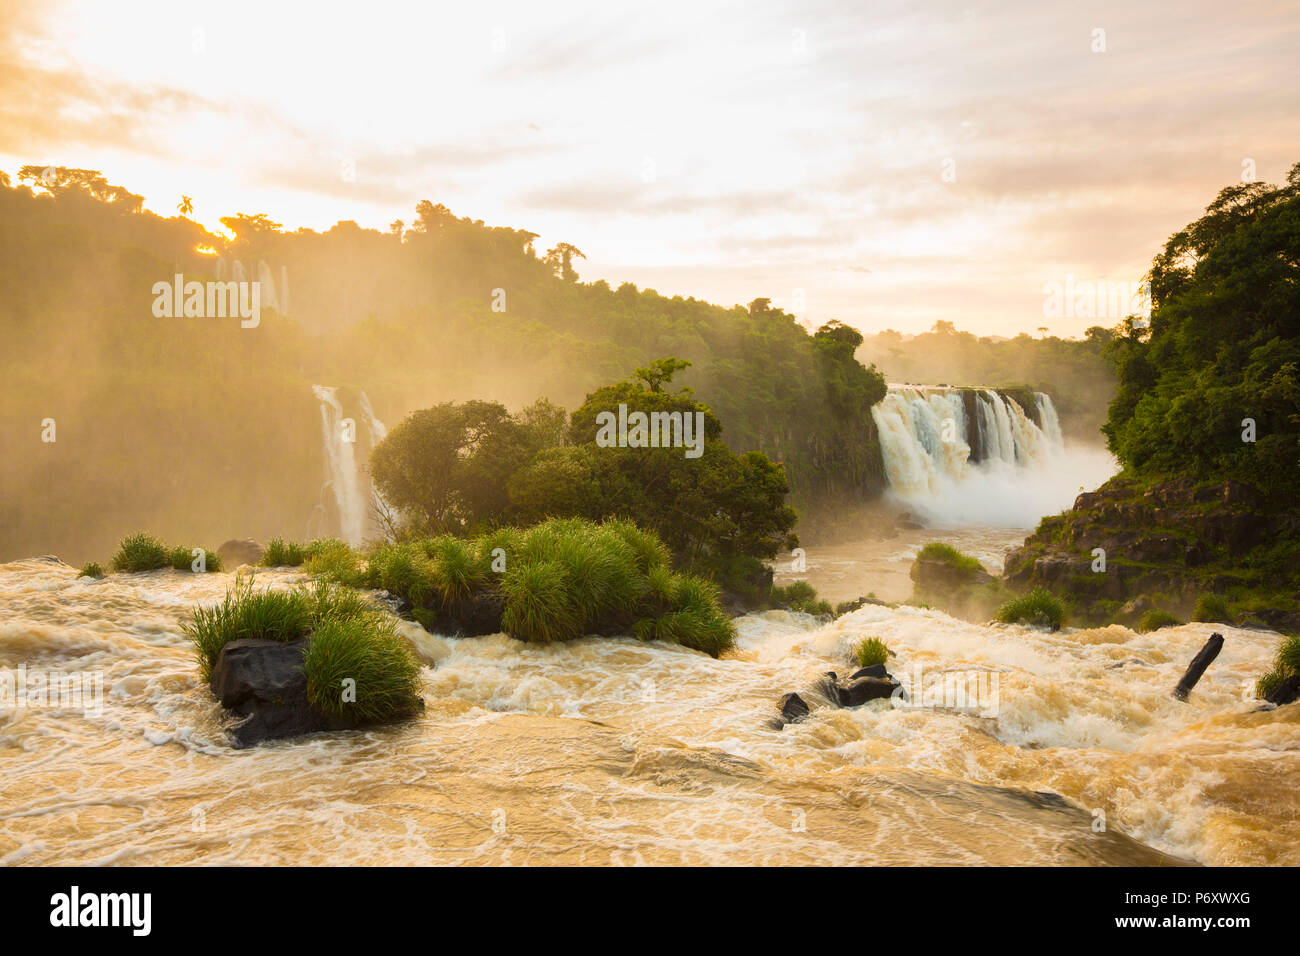 Iguacu Falls, État du Parana, Brésil Banque D'Images